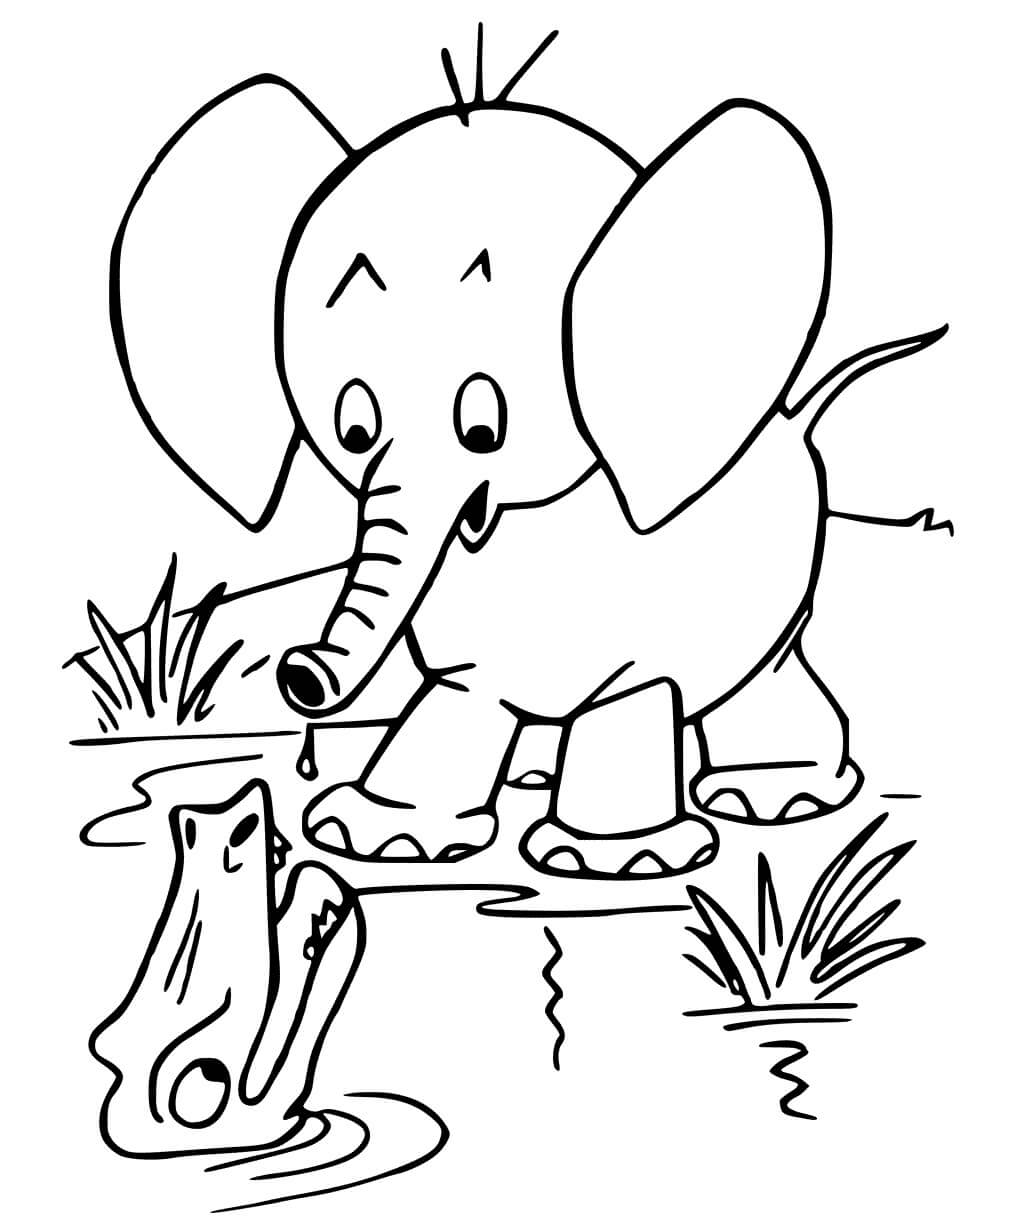 Dibujos de Cocodrilo y Elefante para colorear